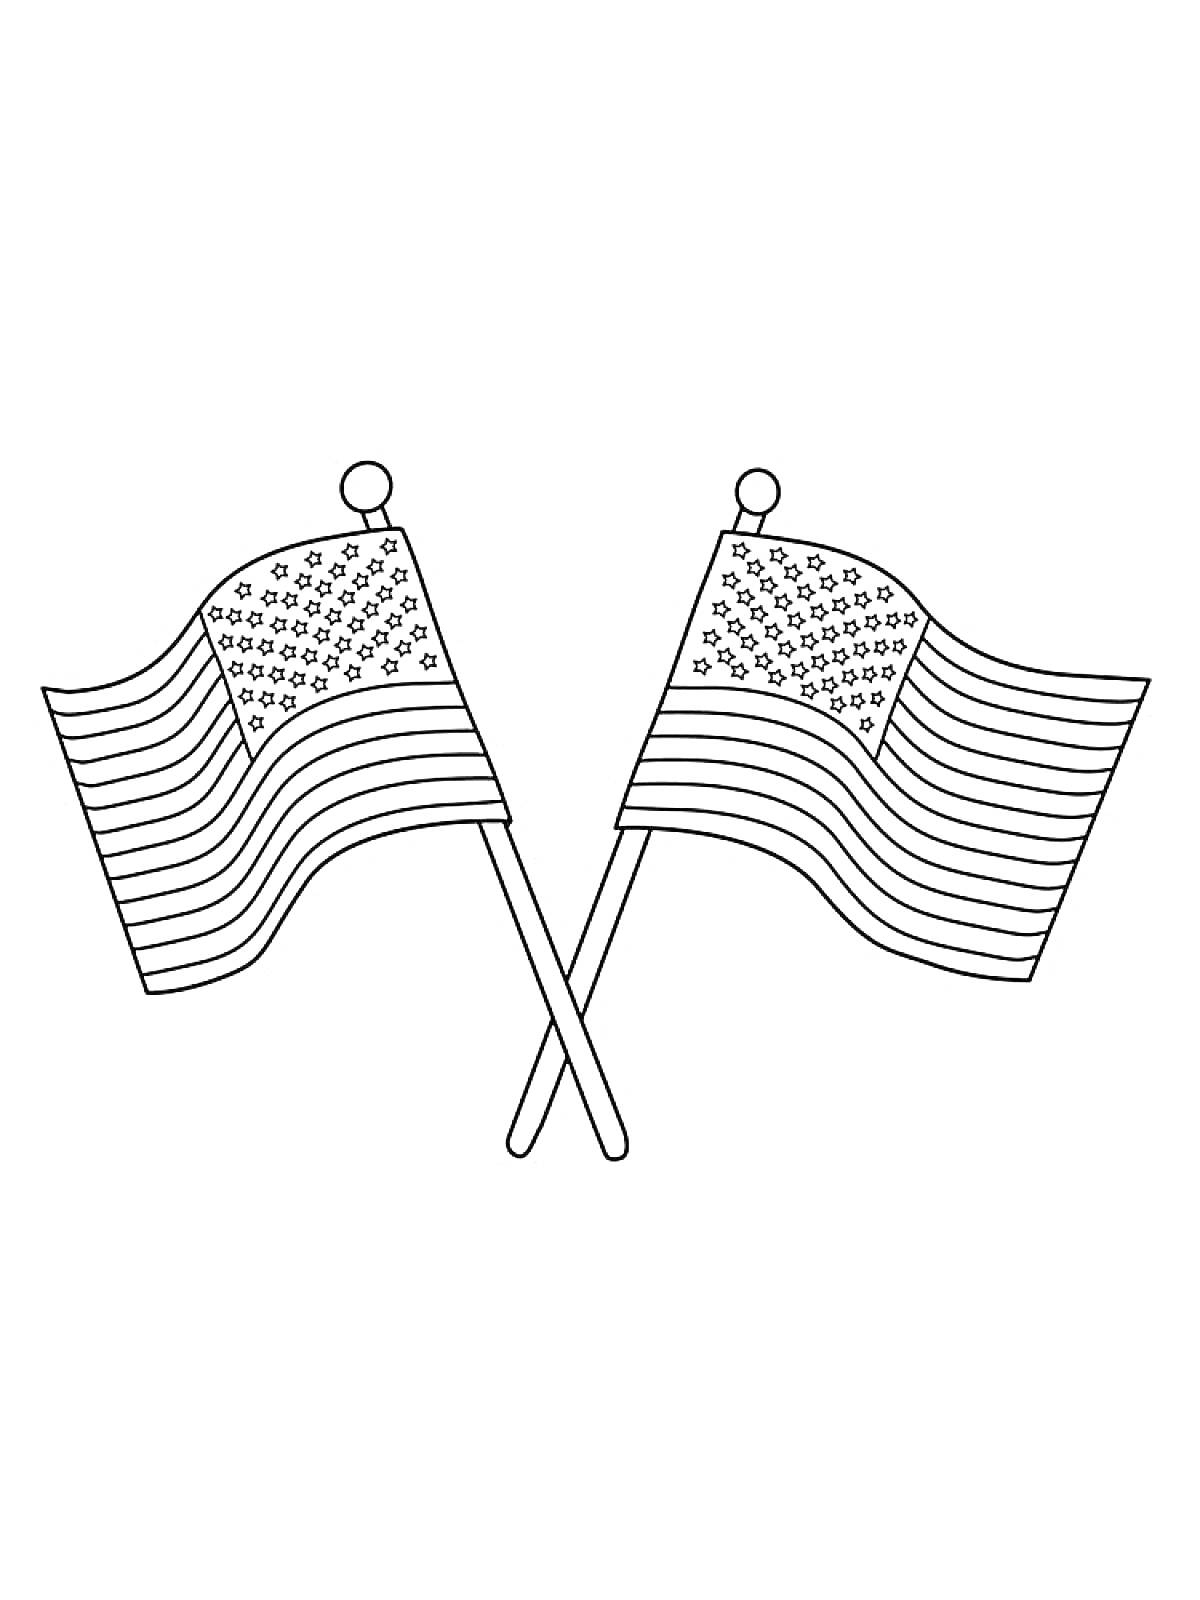 Раскраска Два перекрещенных флага со звездами и полосами на флагштоках